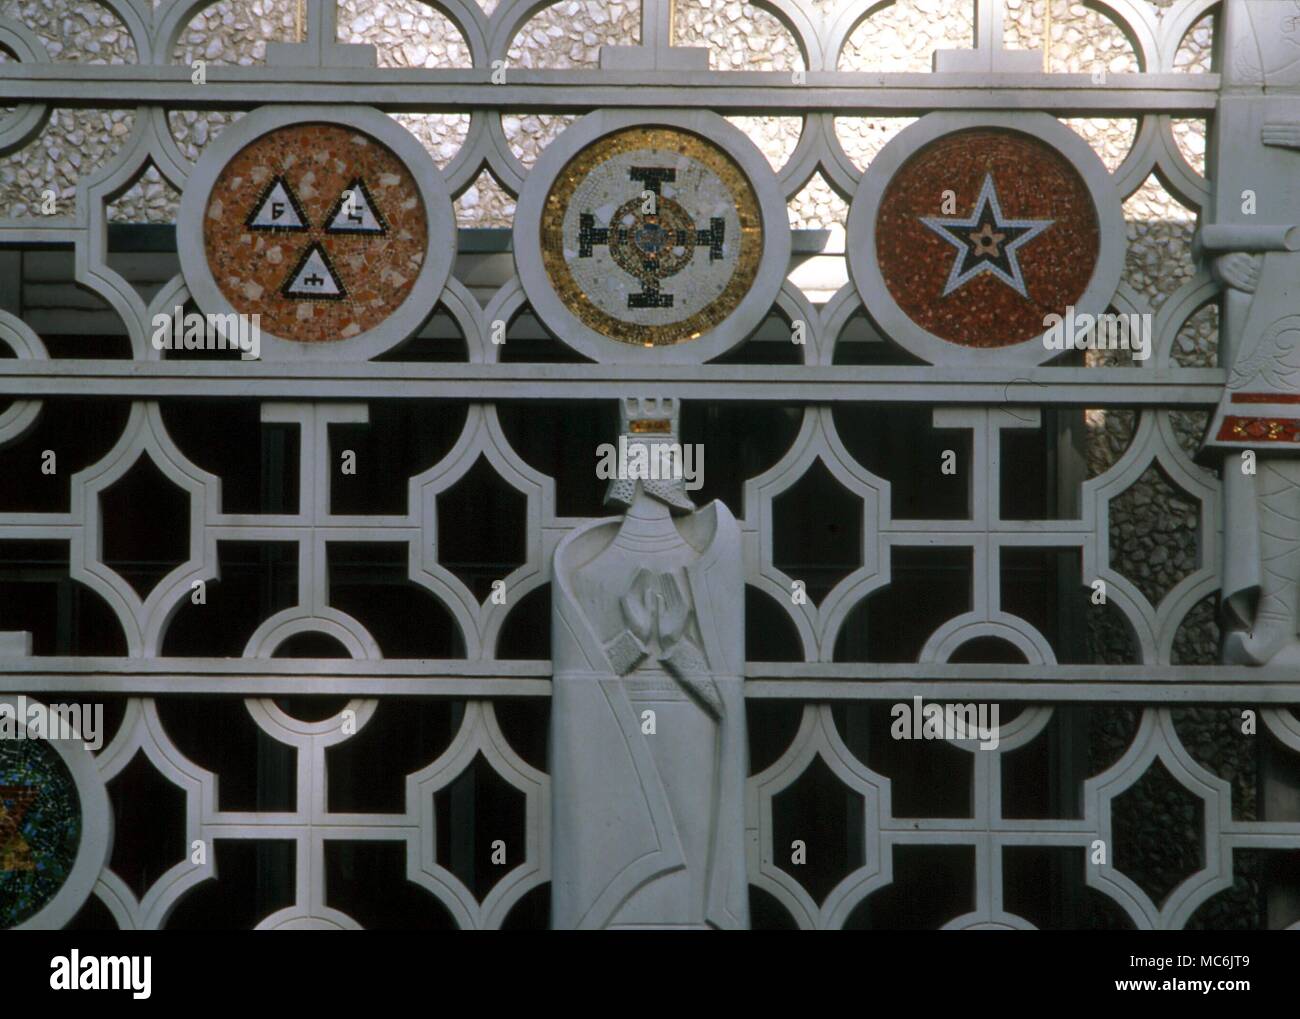 Simboli massonico sulla parete del Rito Scozzese tempio massonico a San Francisco Foto Stock